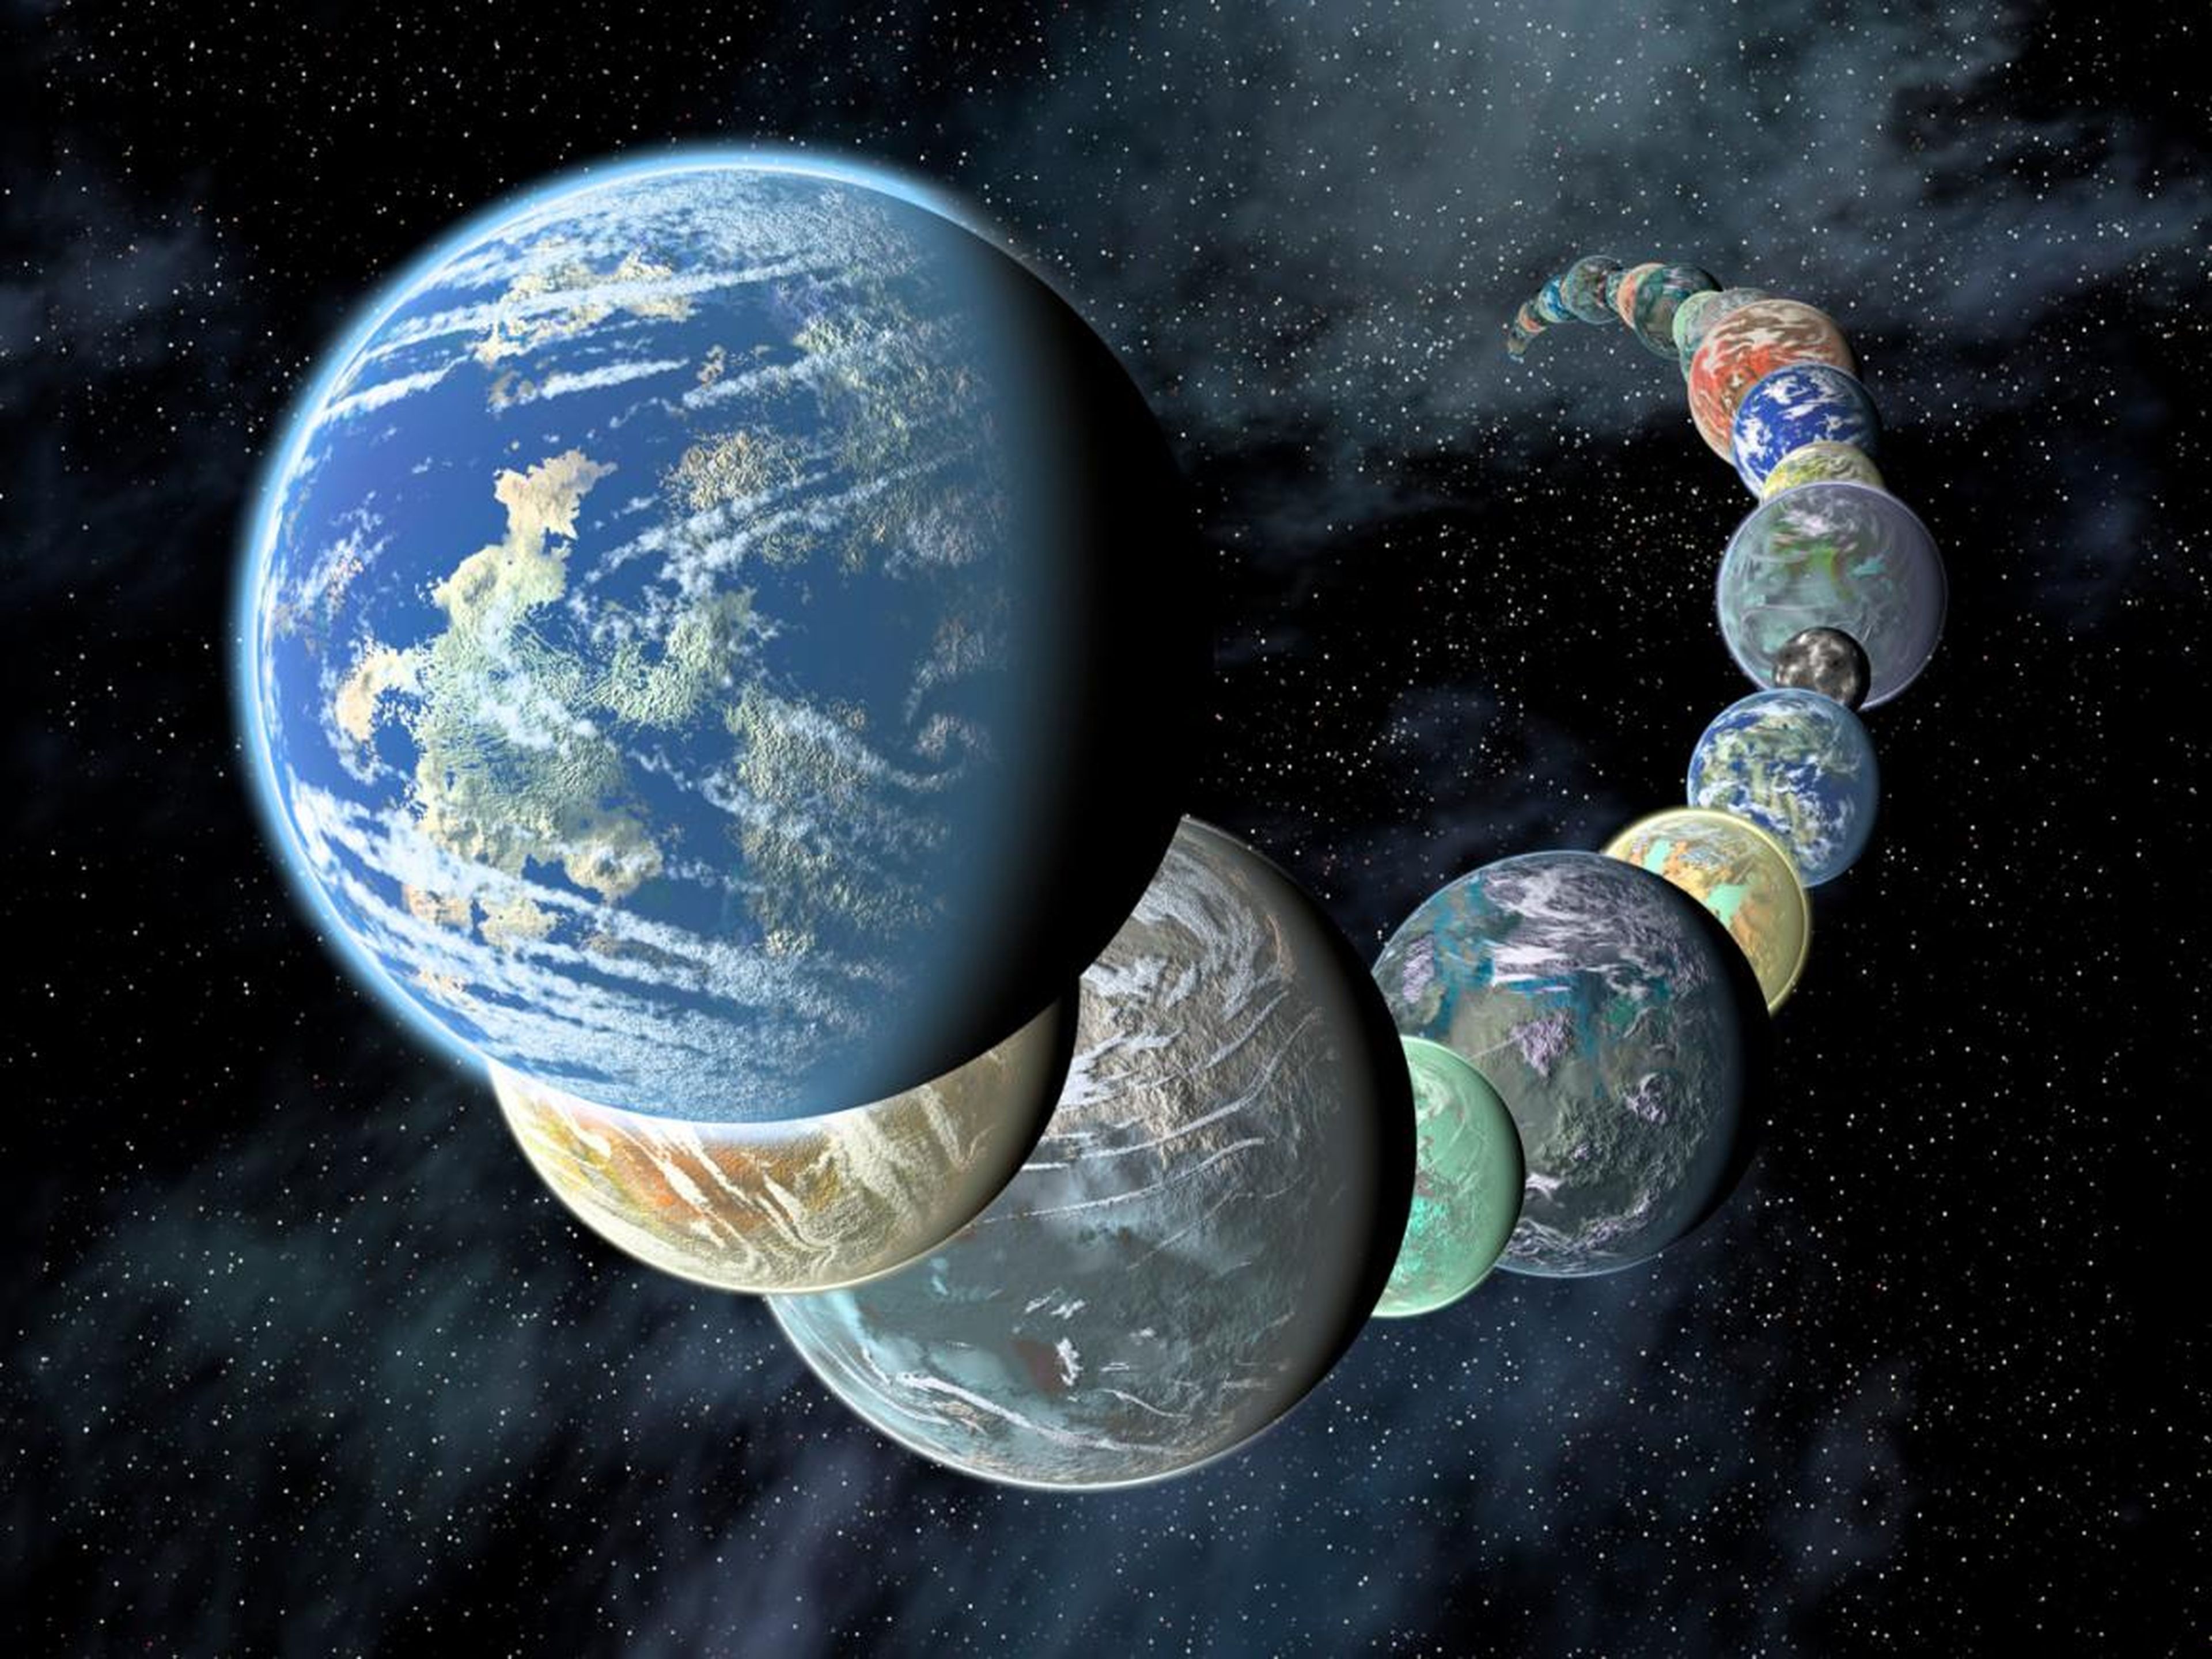 Los planetas similares a la Tierra tienen diferentes tamaños y composiciones.